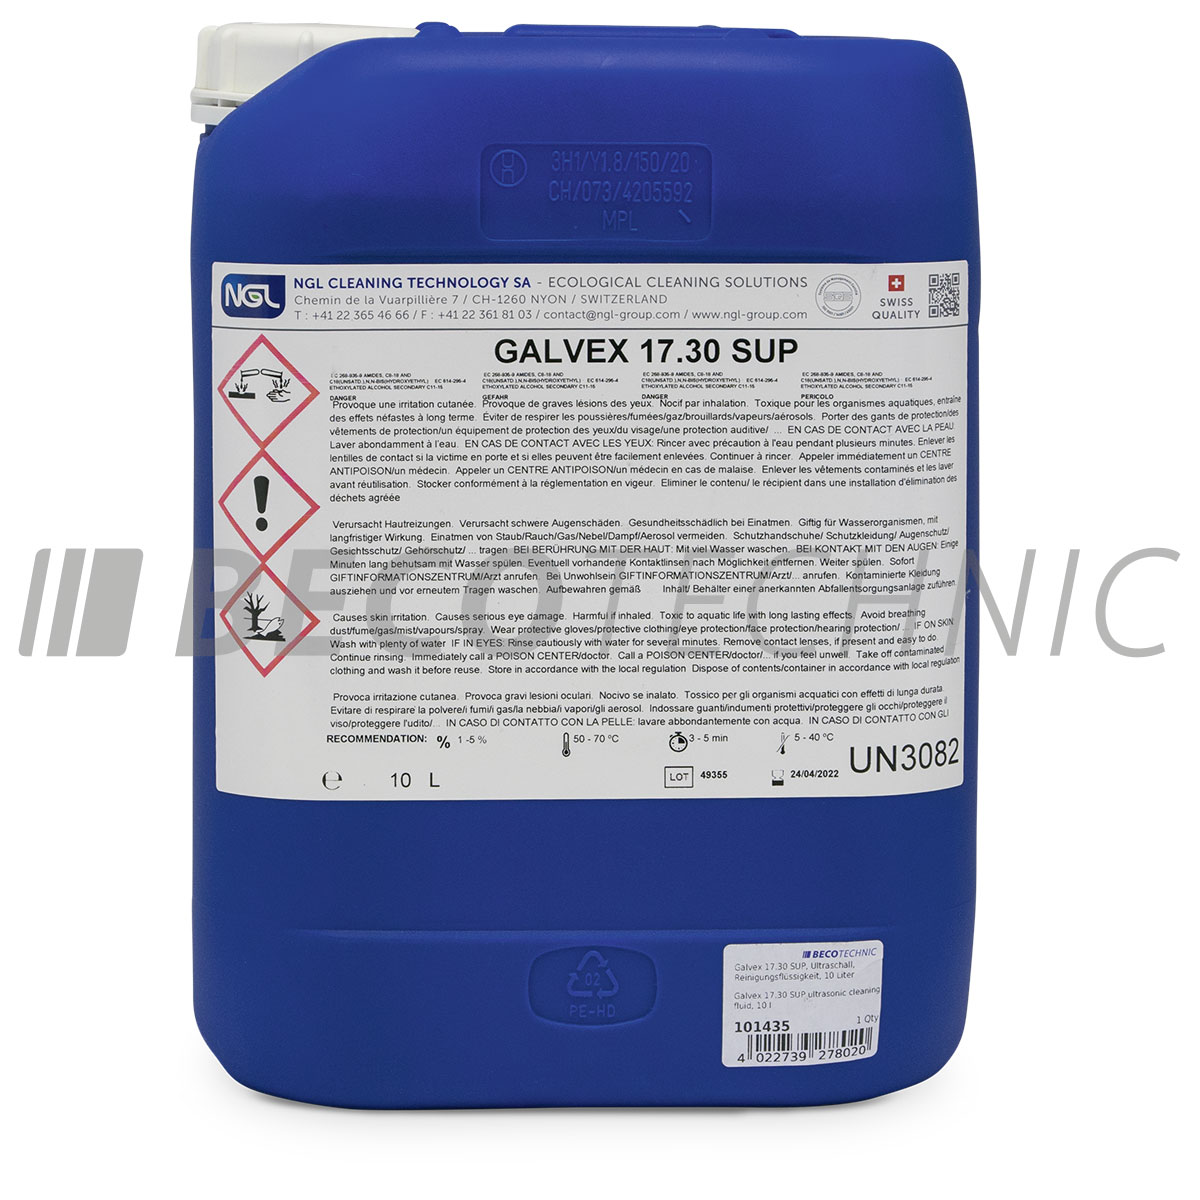 Galvex 17.30 SUP, Ultraschall-Reinigungsflüssigkeit, 10 Liter